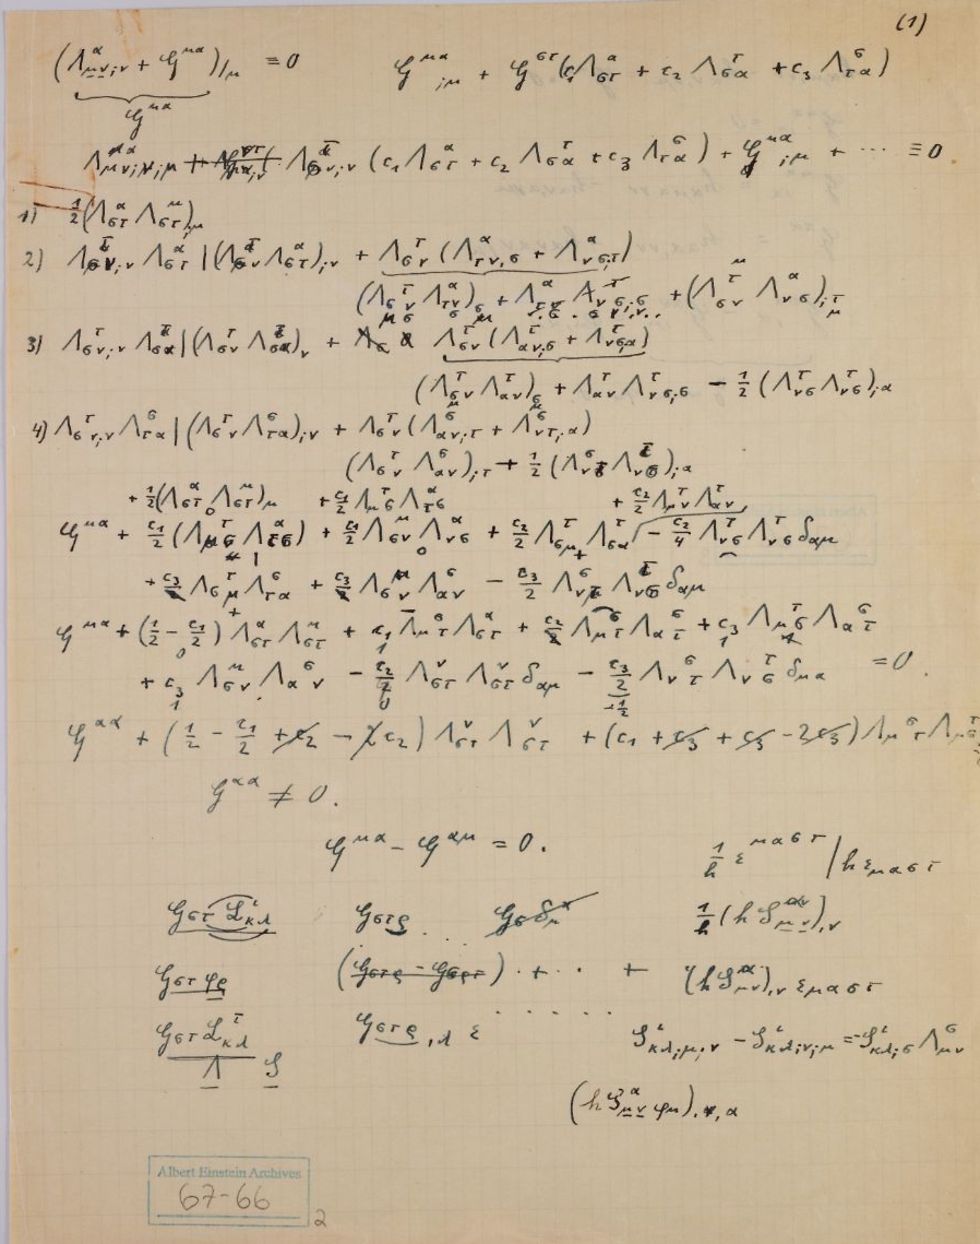 מתוך האוסף של כתבי אלברט איינשטיין (צילום: ארדון בר-חמא)